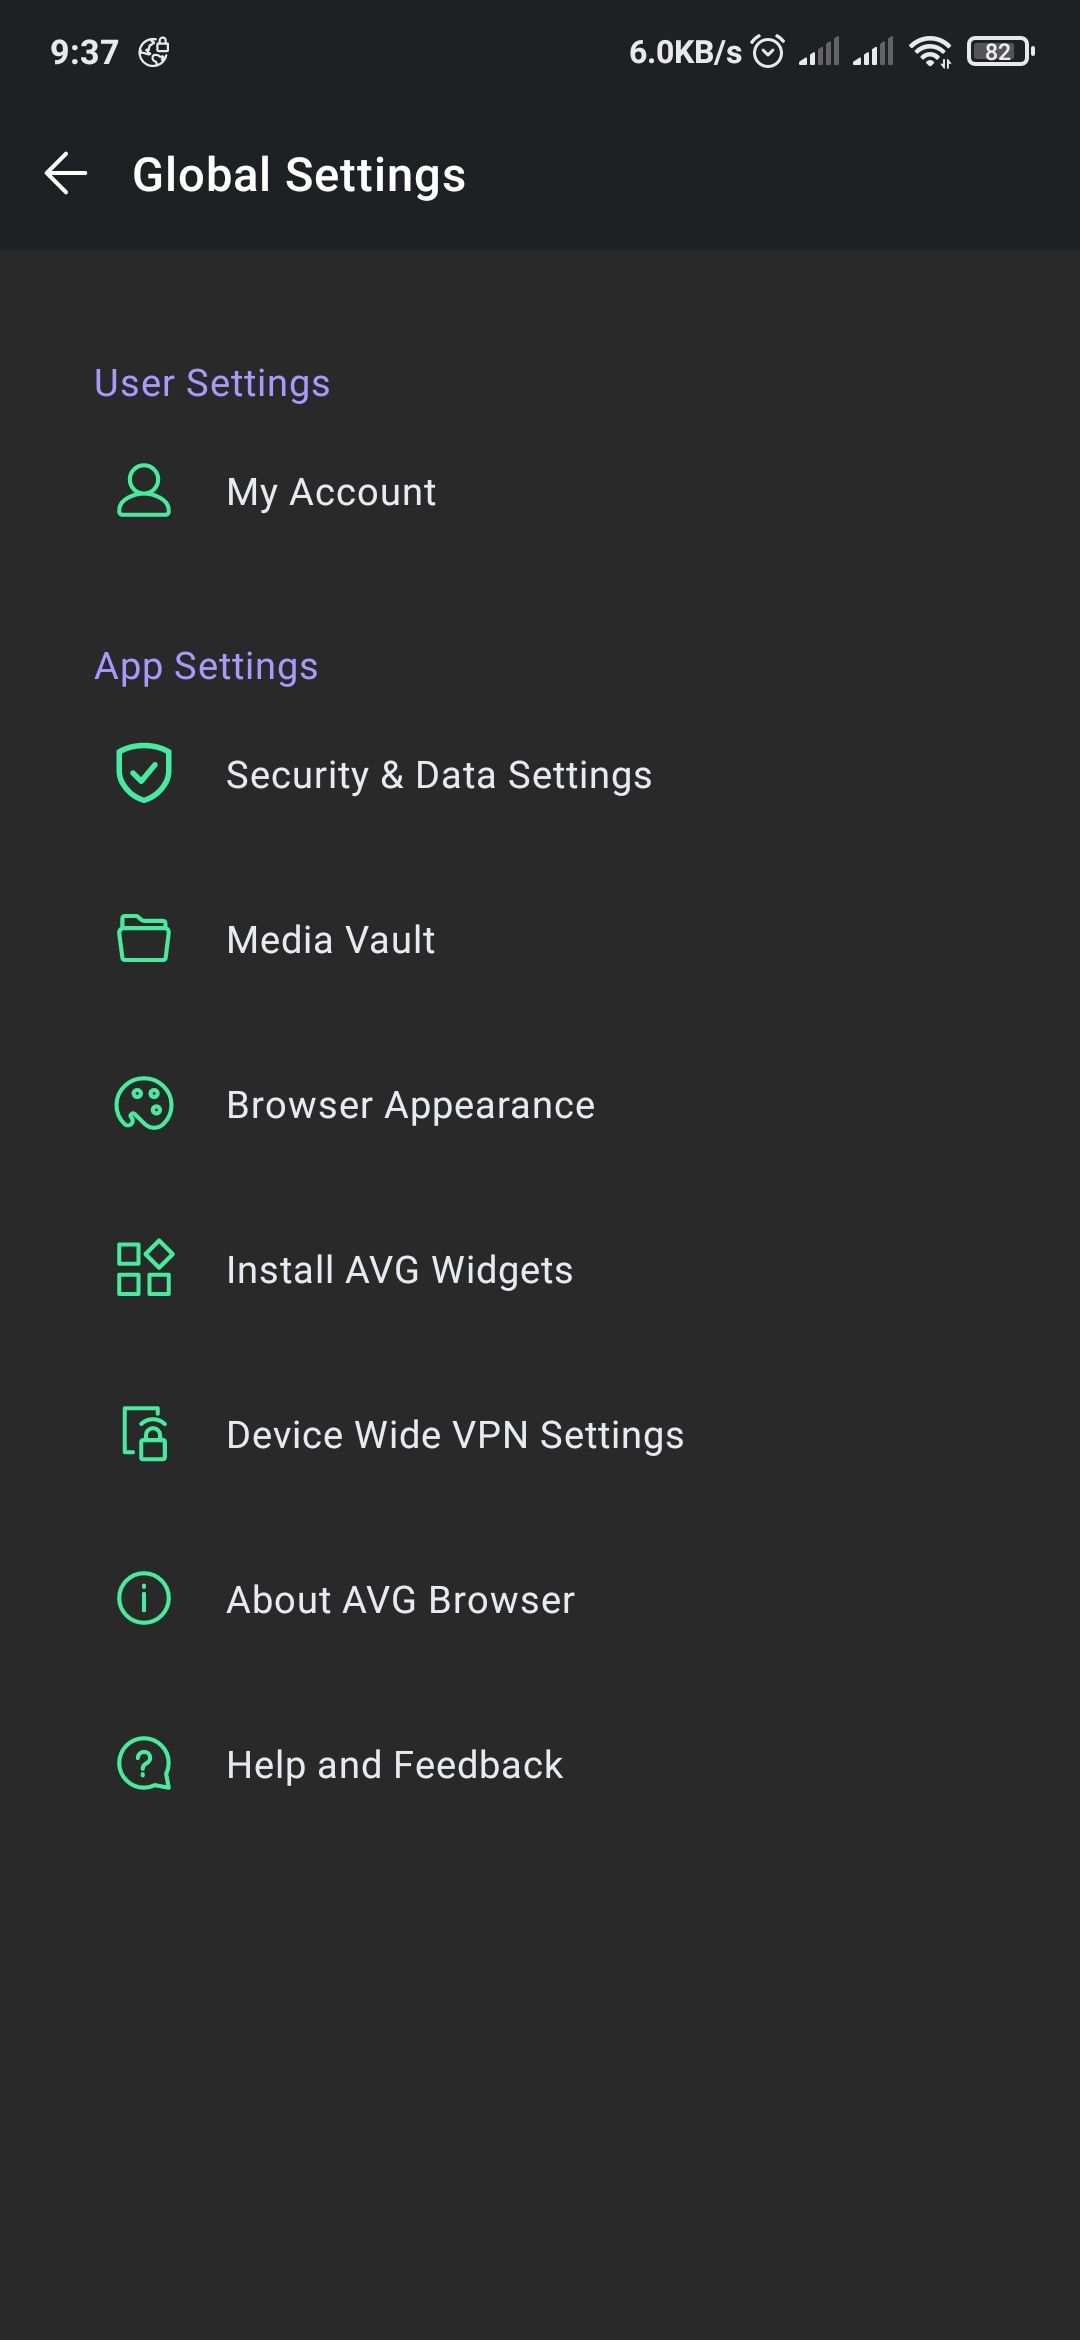 AVG browser settings menu